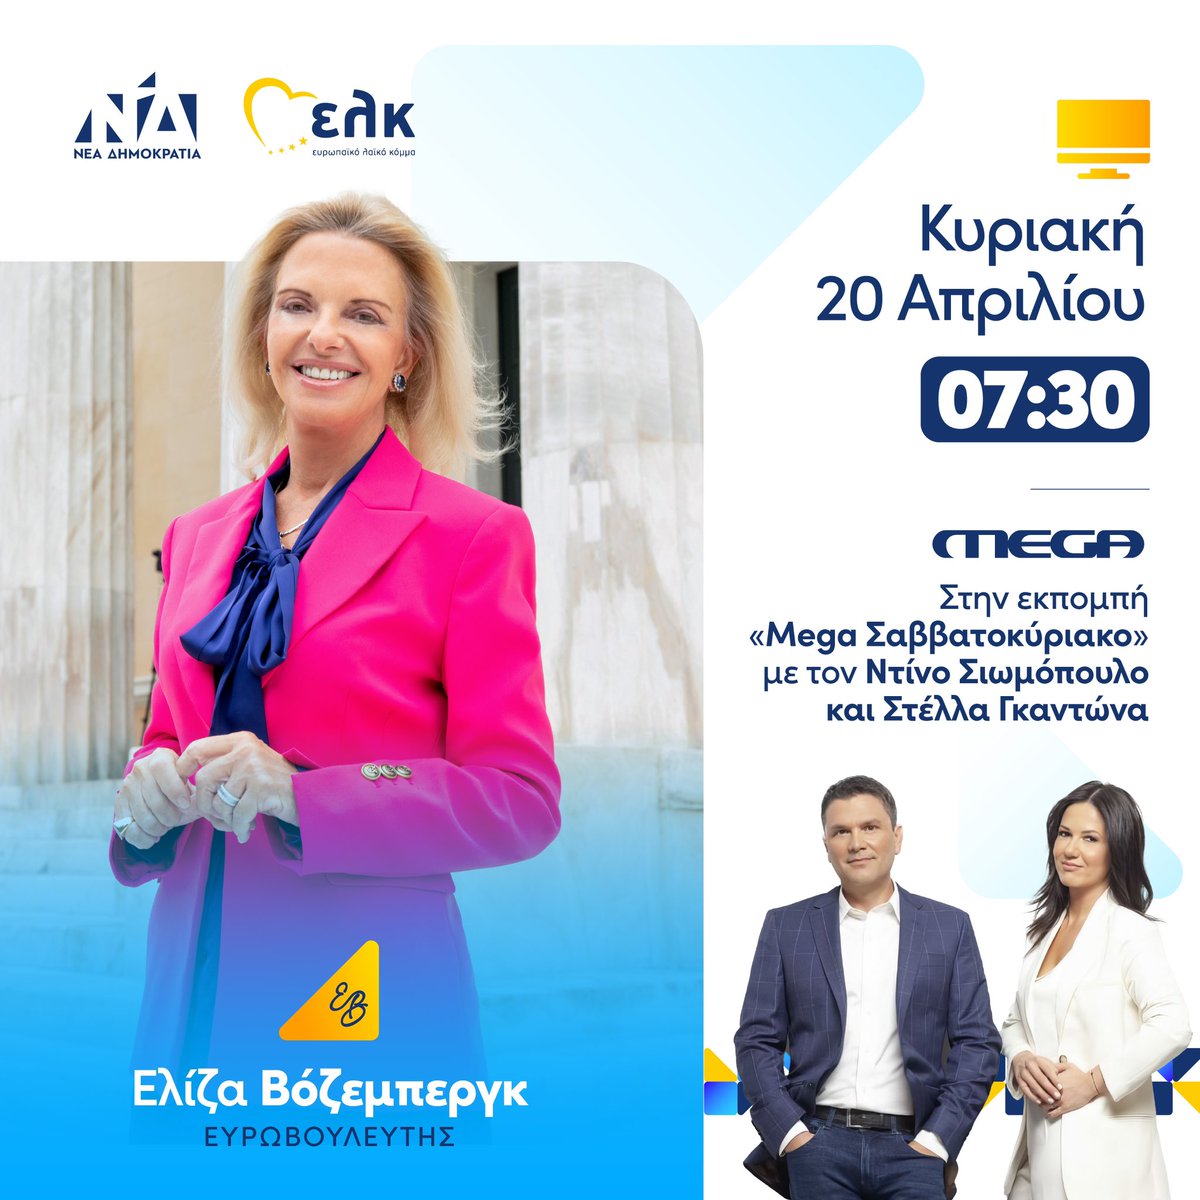 📺 Κυριακή στις 7:30 το πρωί στην εκπομπή «Mega Σαββατοκύριακο» με τον Ντίνο Σιωμόπουλο και @stella_gadona_ . #Vozemberg #ND #EPP #EK #ΠαντούΣτηνΕλλάδα